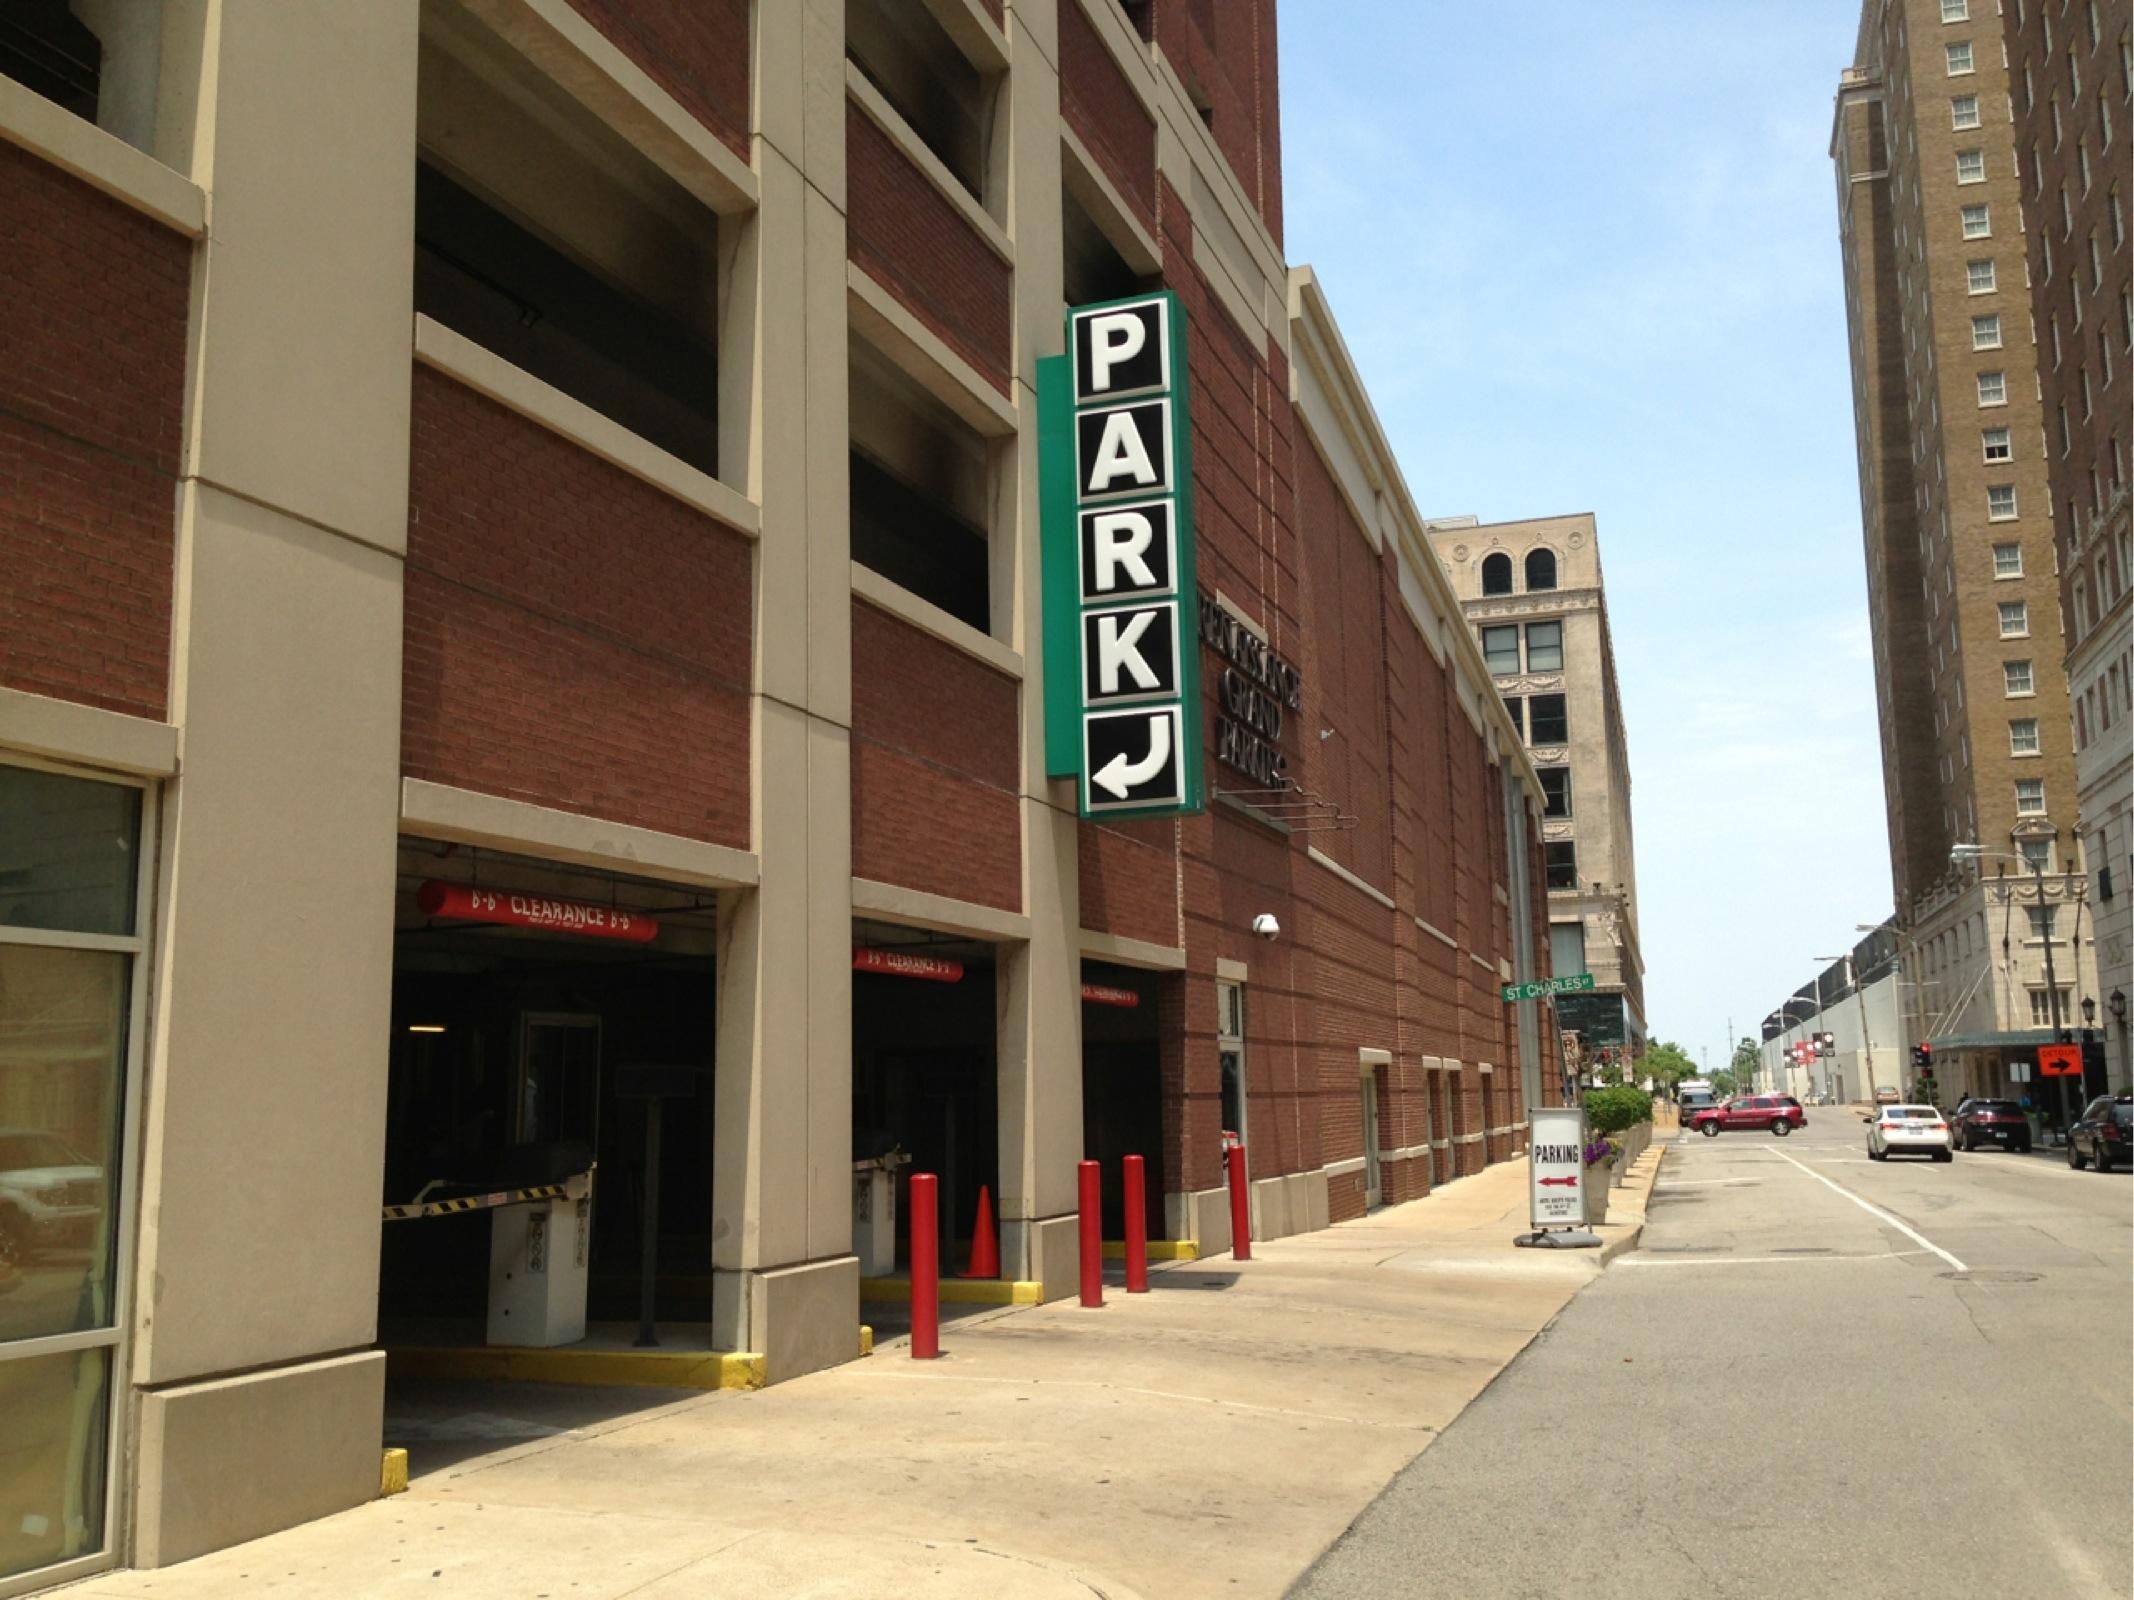 SLCCH Garage - Parking in St. Louis | ParkMe